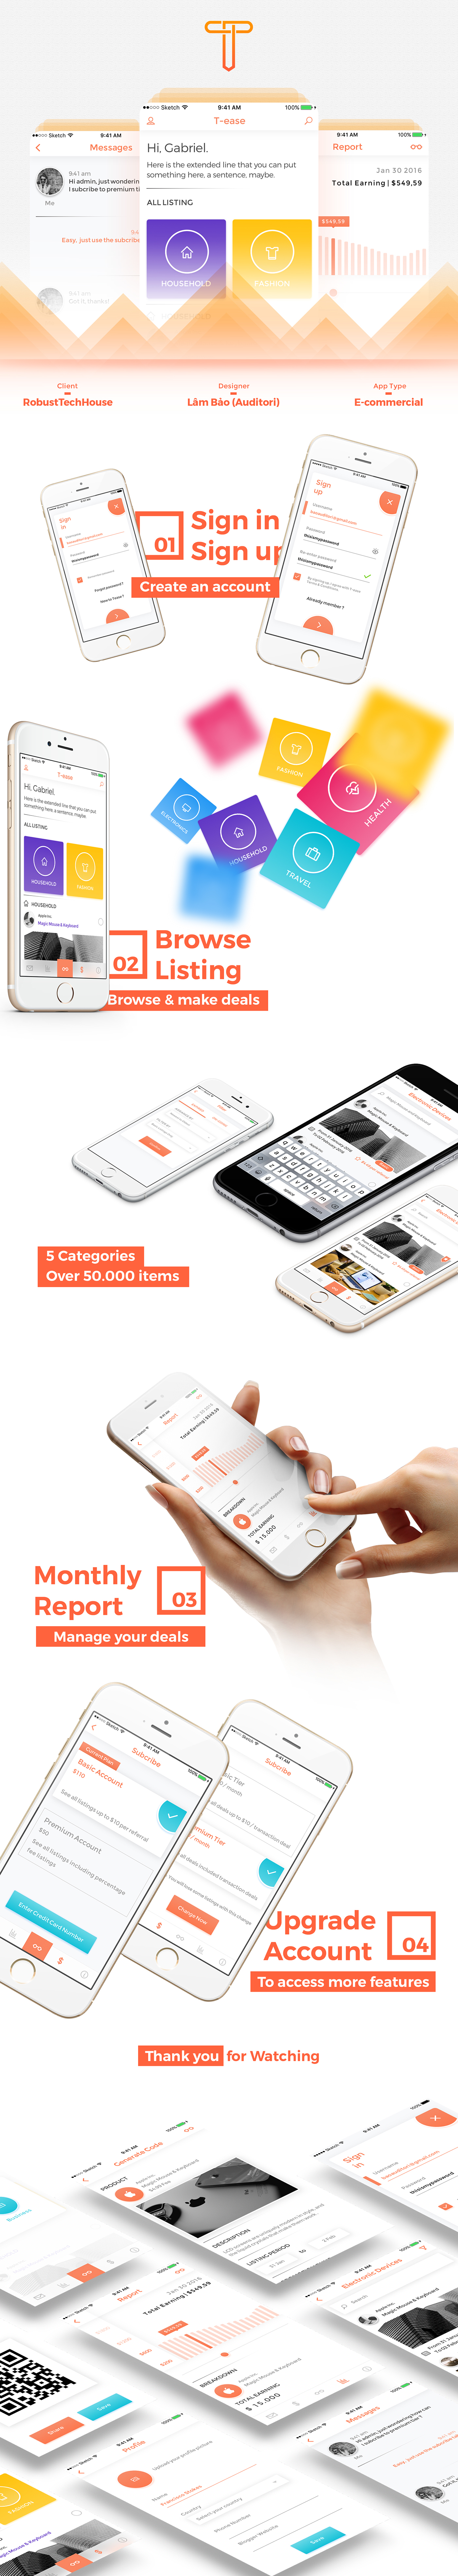 T-ease ecommercial app design mobile design mobile orange auditori Lâm Gia Bảo Deals adobeawards